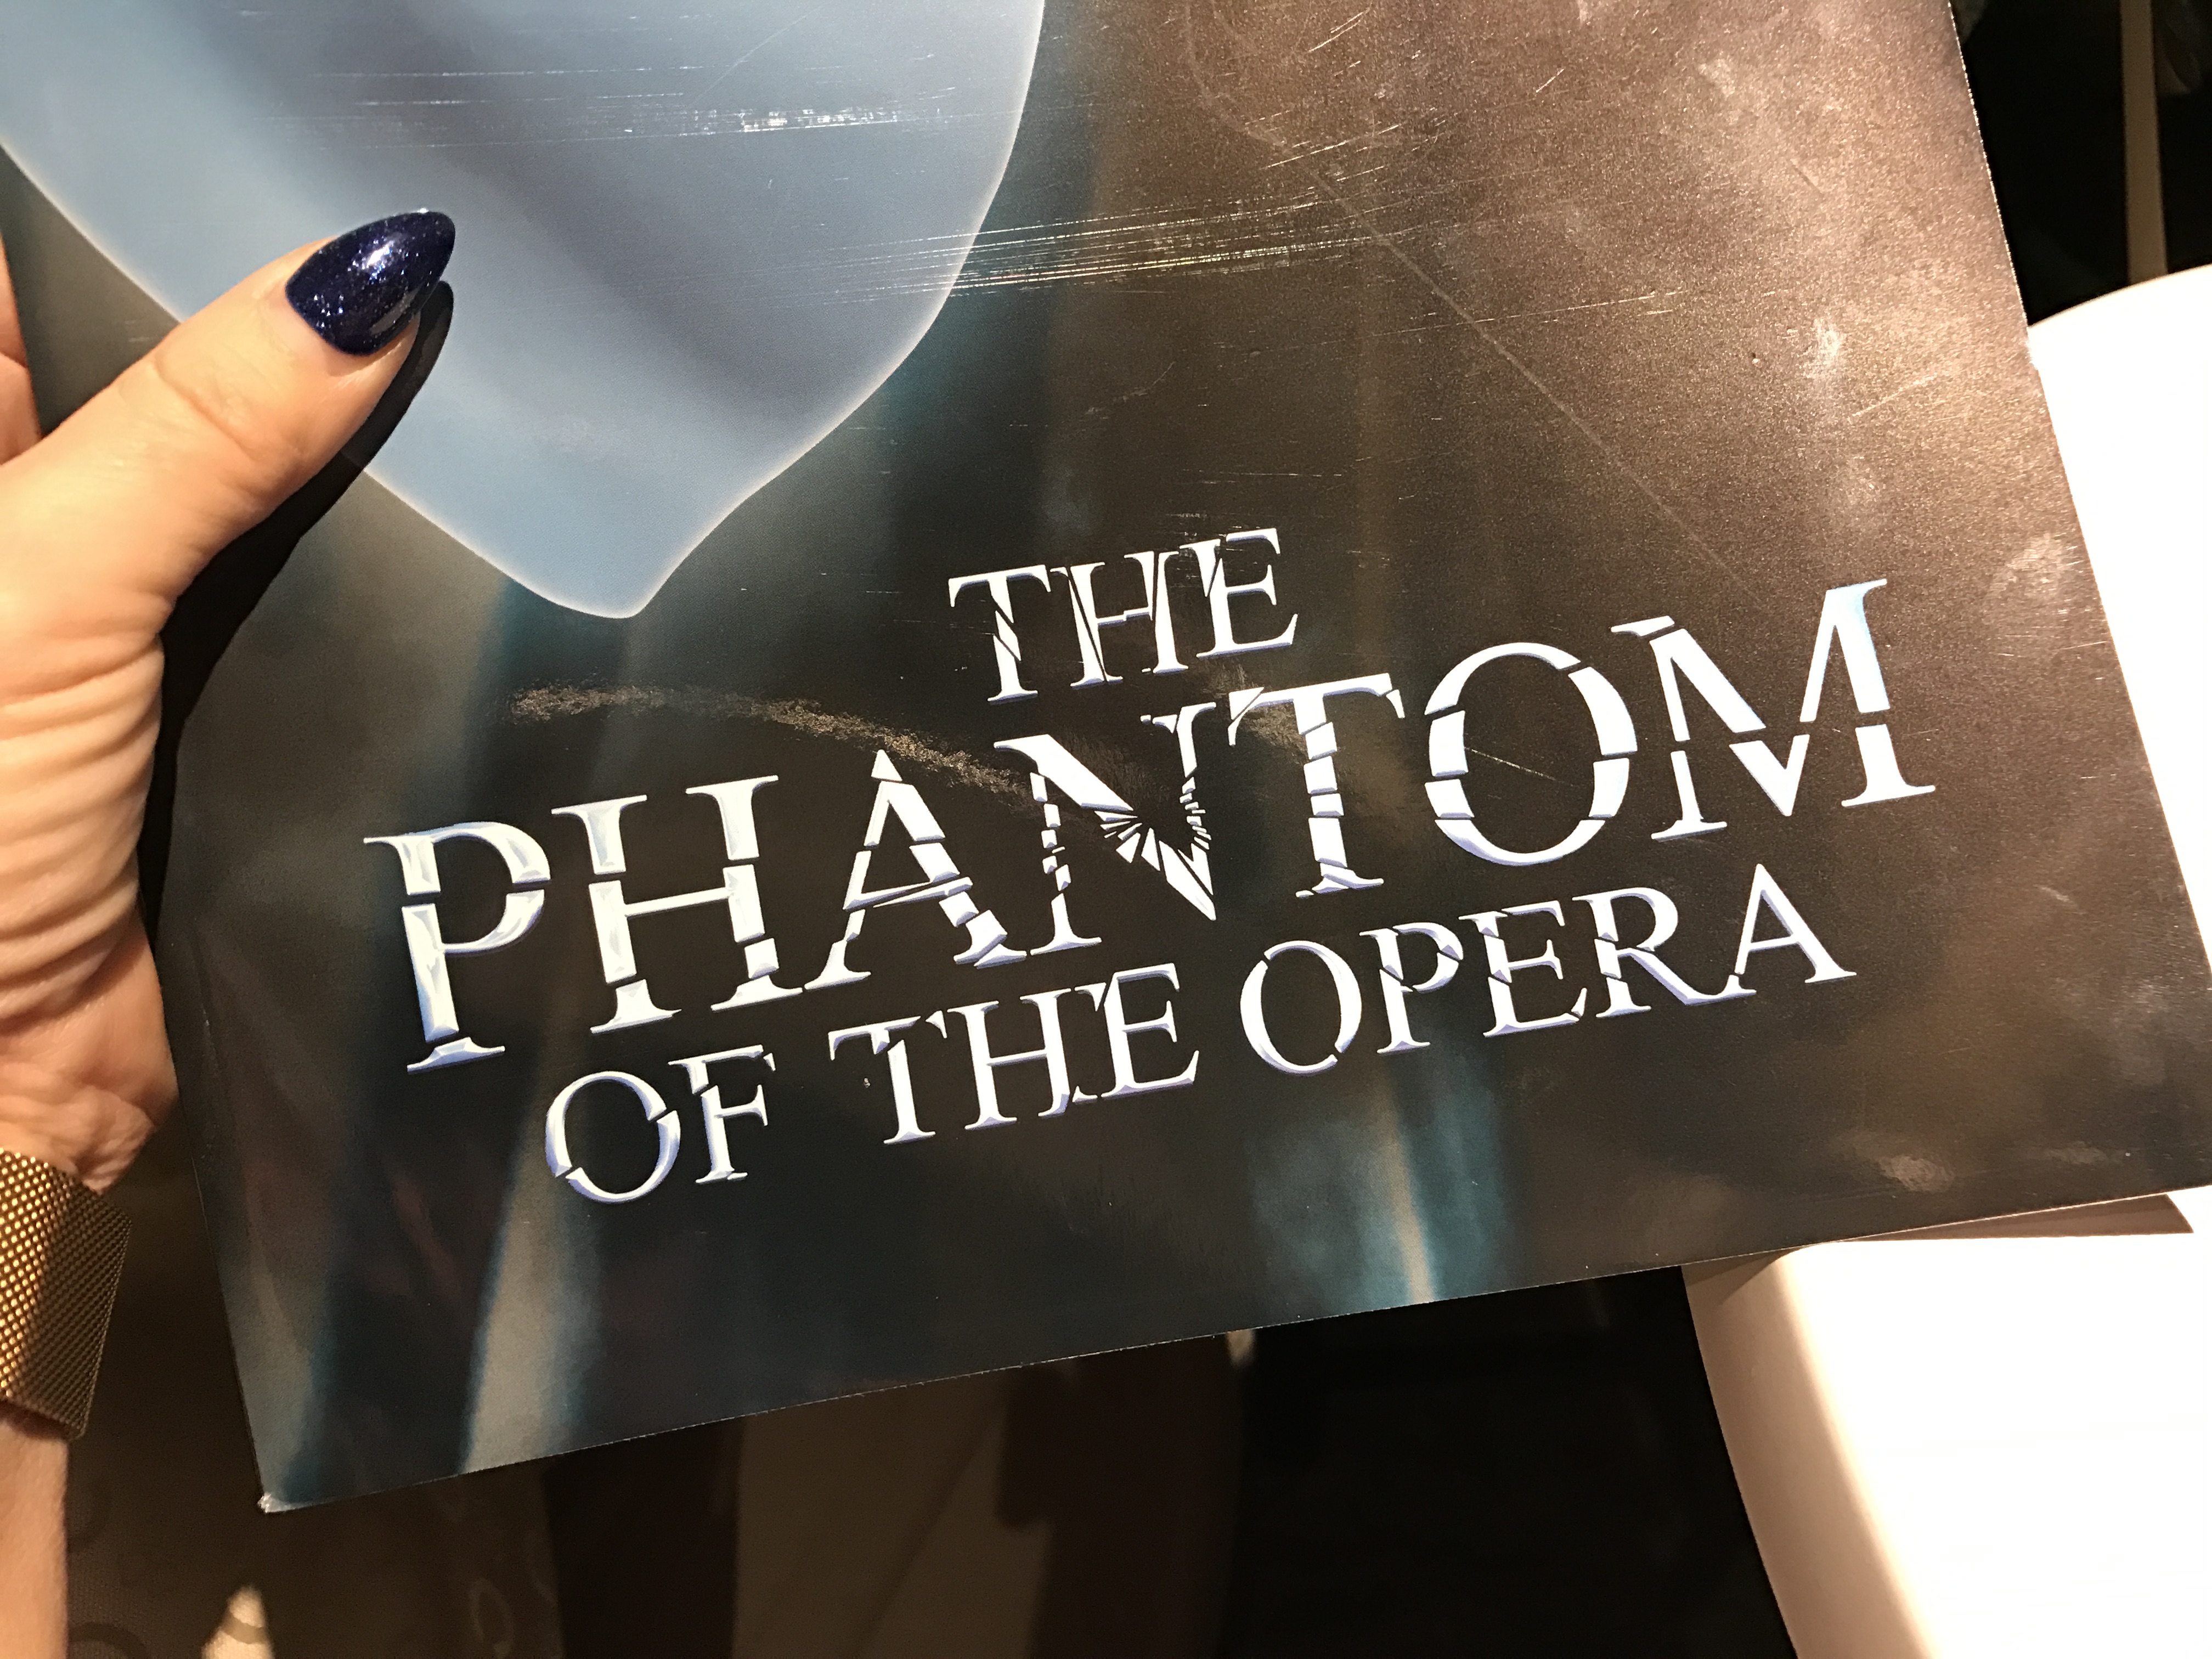 Fantomen på Operan